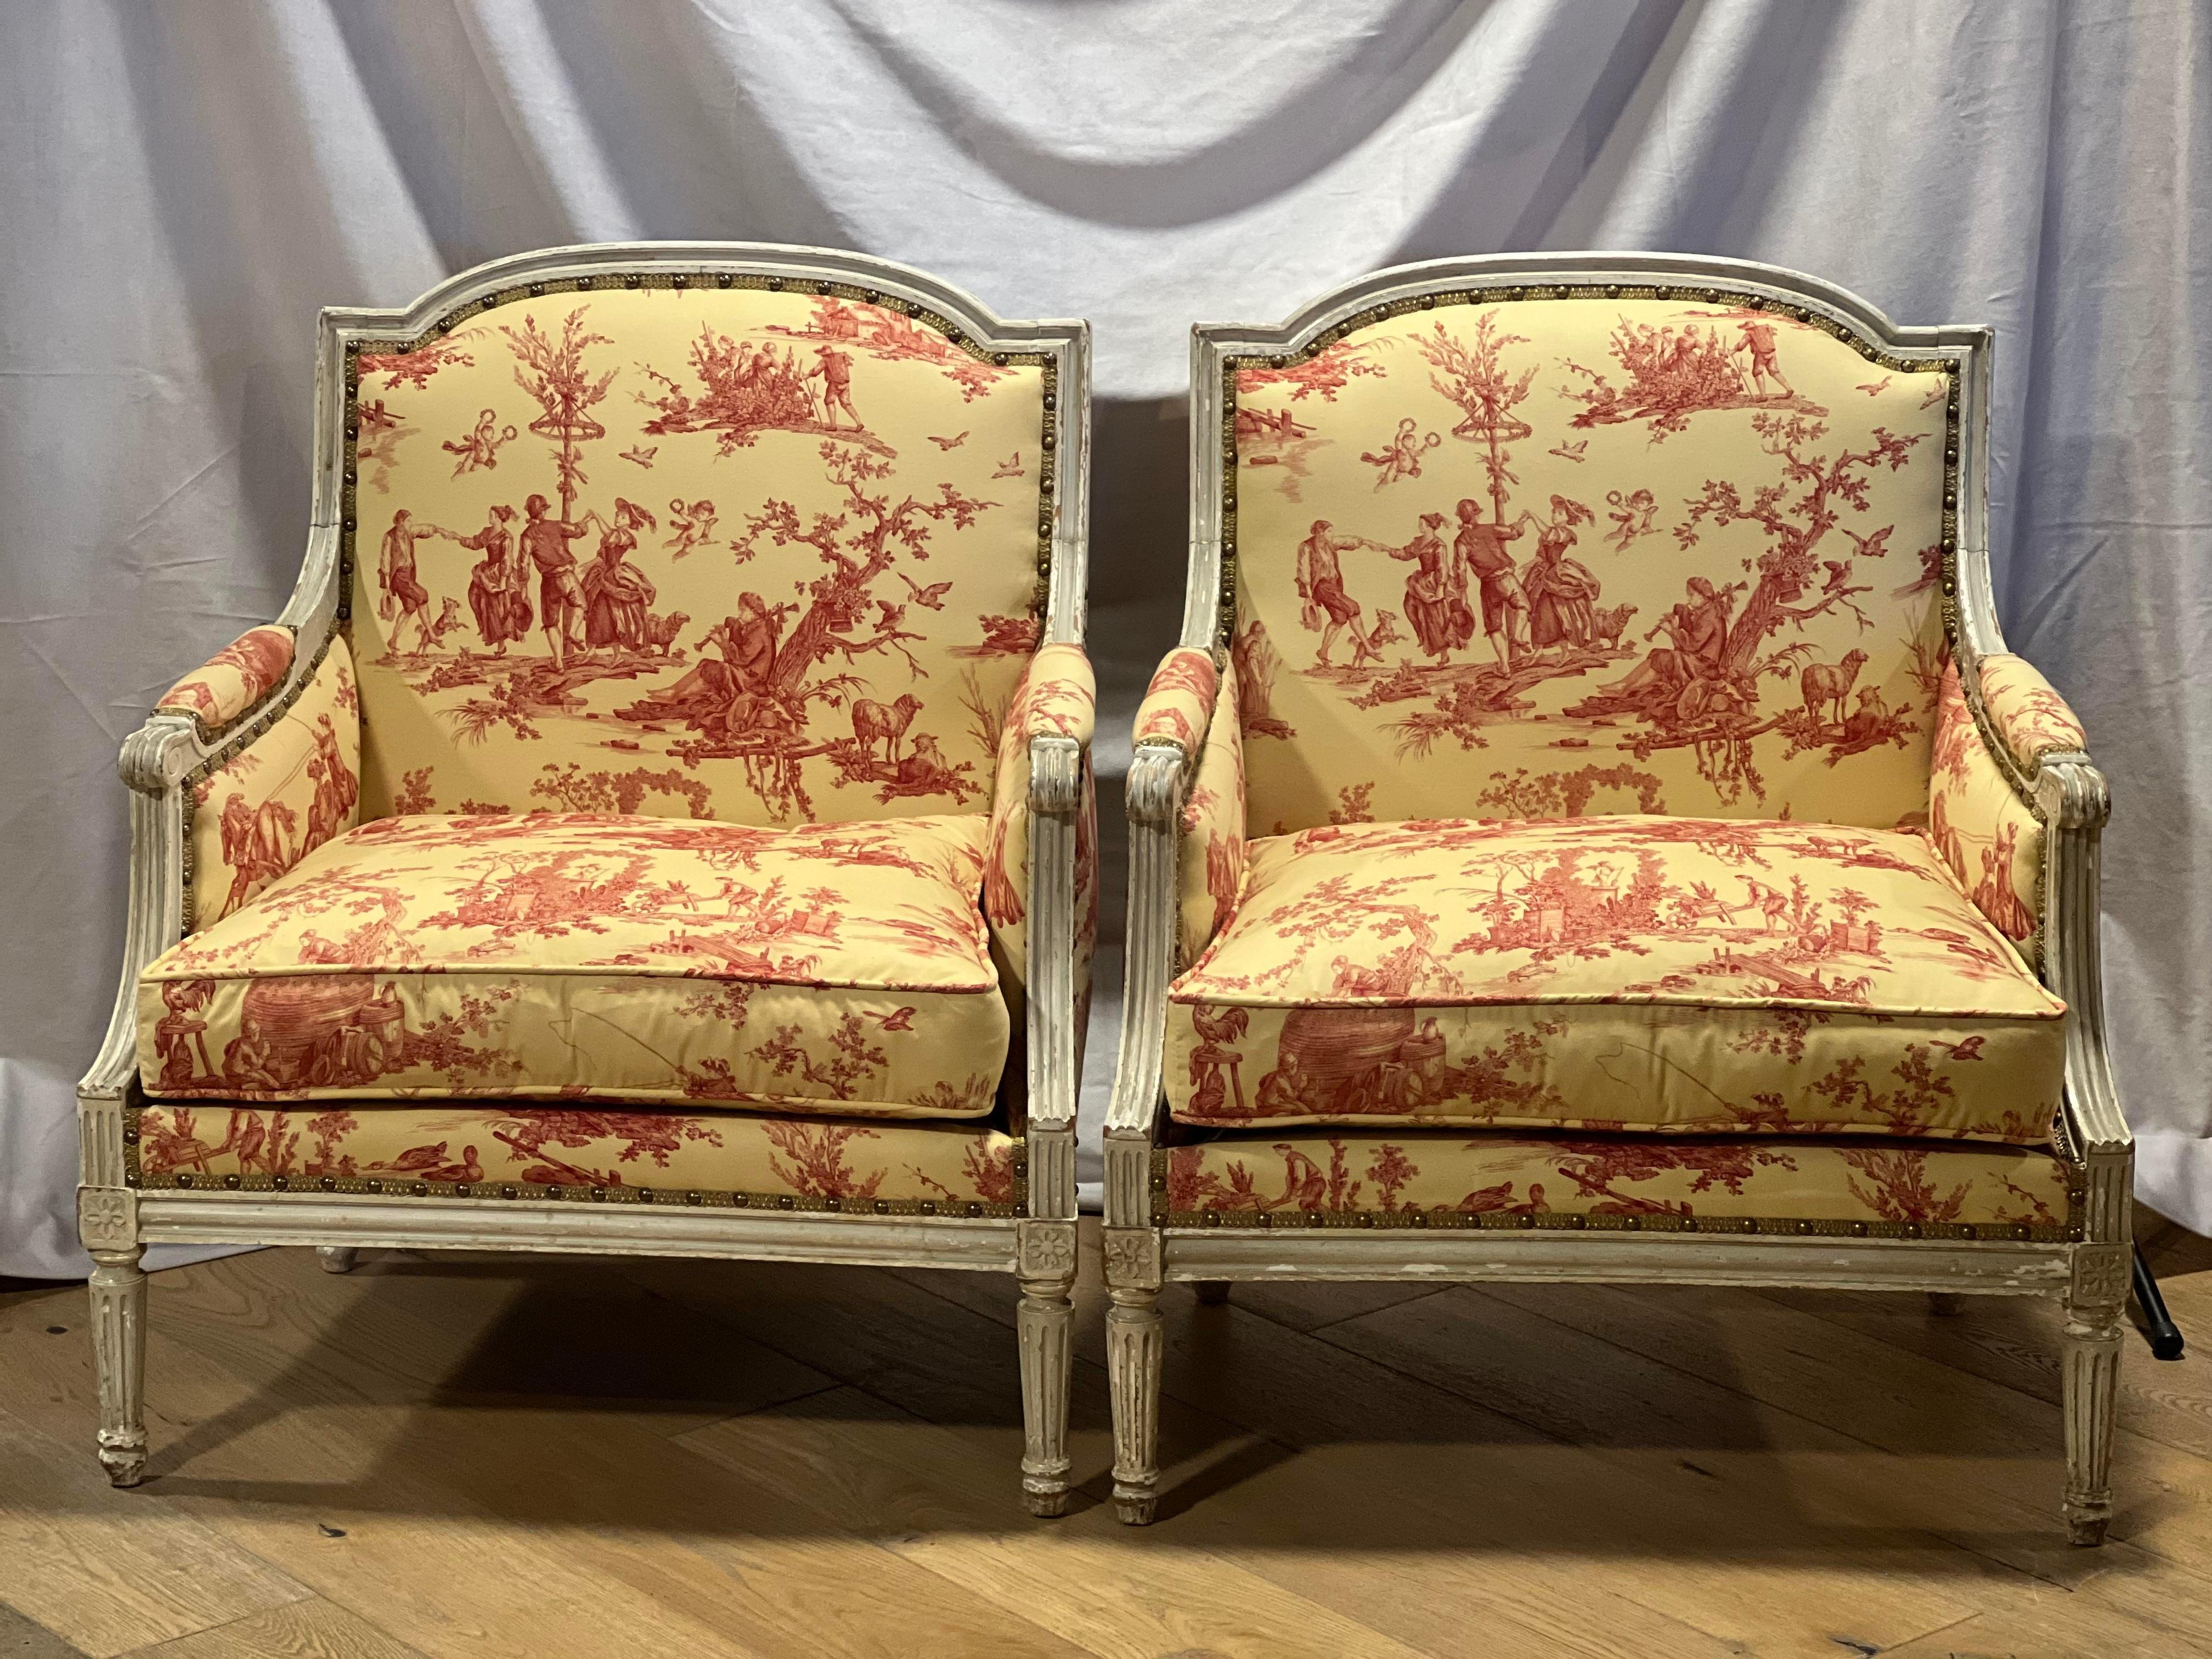 Paire d'objets de la fin du 19e siècle  Chaises Marquise françaises de style Louis XVI.  Peinture laquée blanche d'origine.  Les chaises ont un nouveau rembourrage ainsi qu'un nouveau tissu.